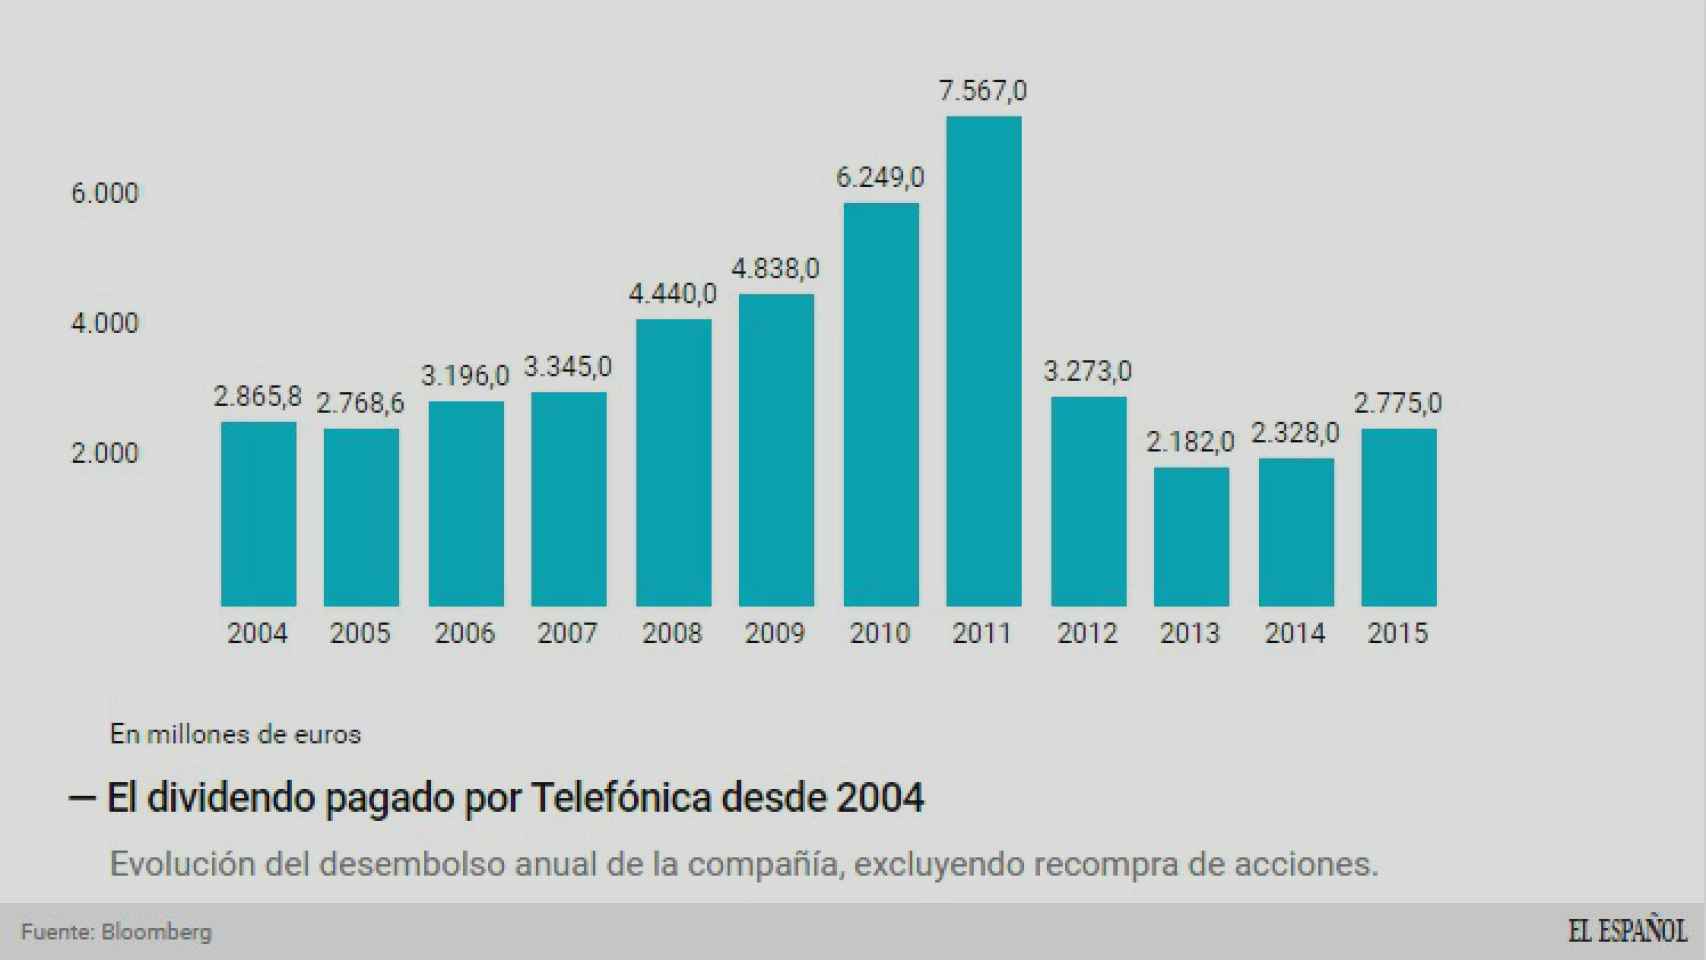 Evolución del desembolso para dividendo de Telefónica desde 2004.